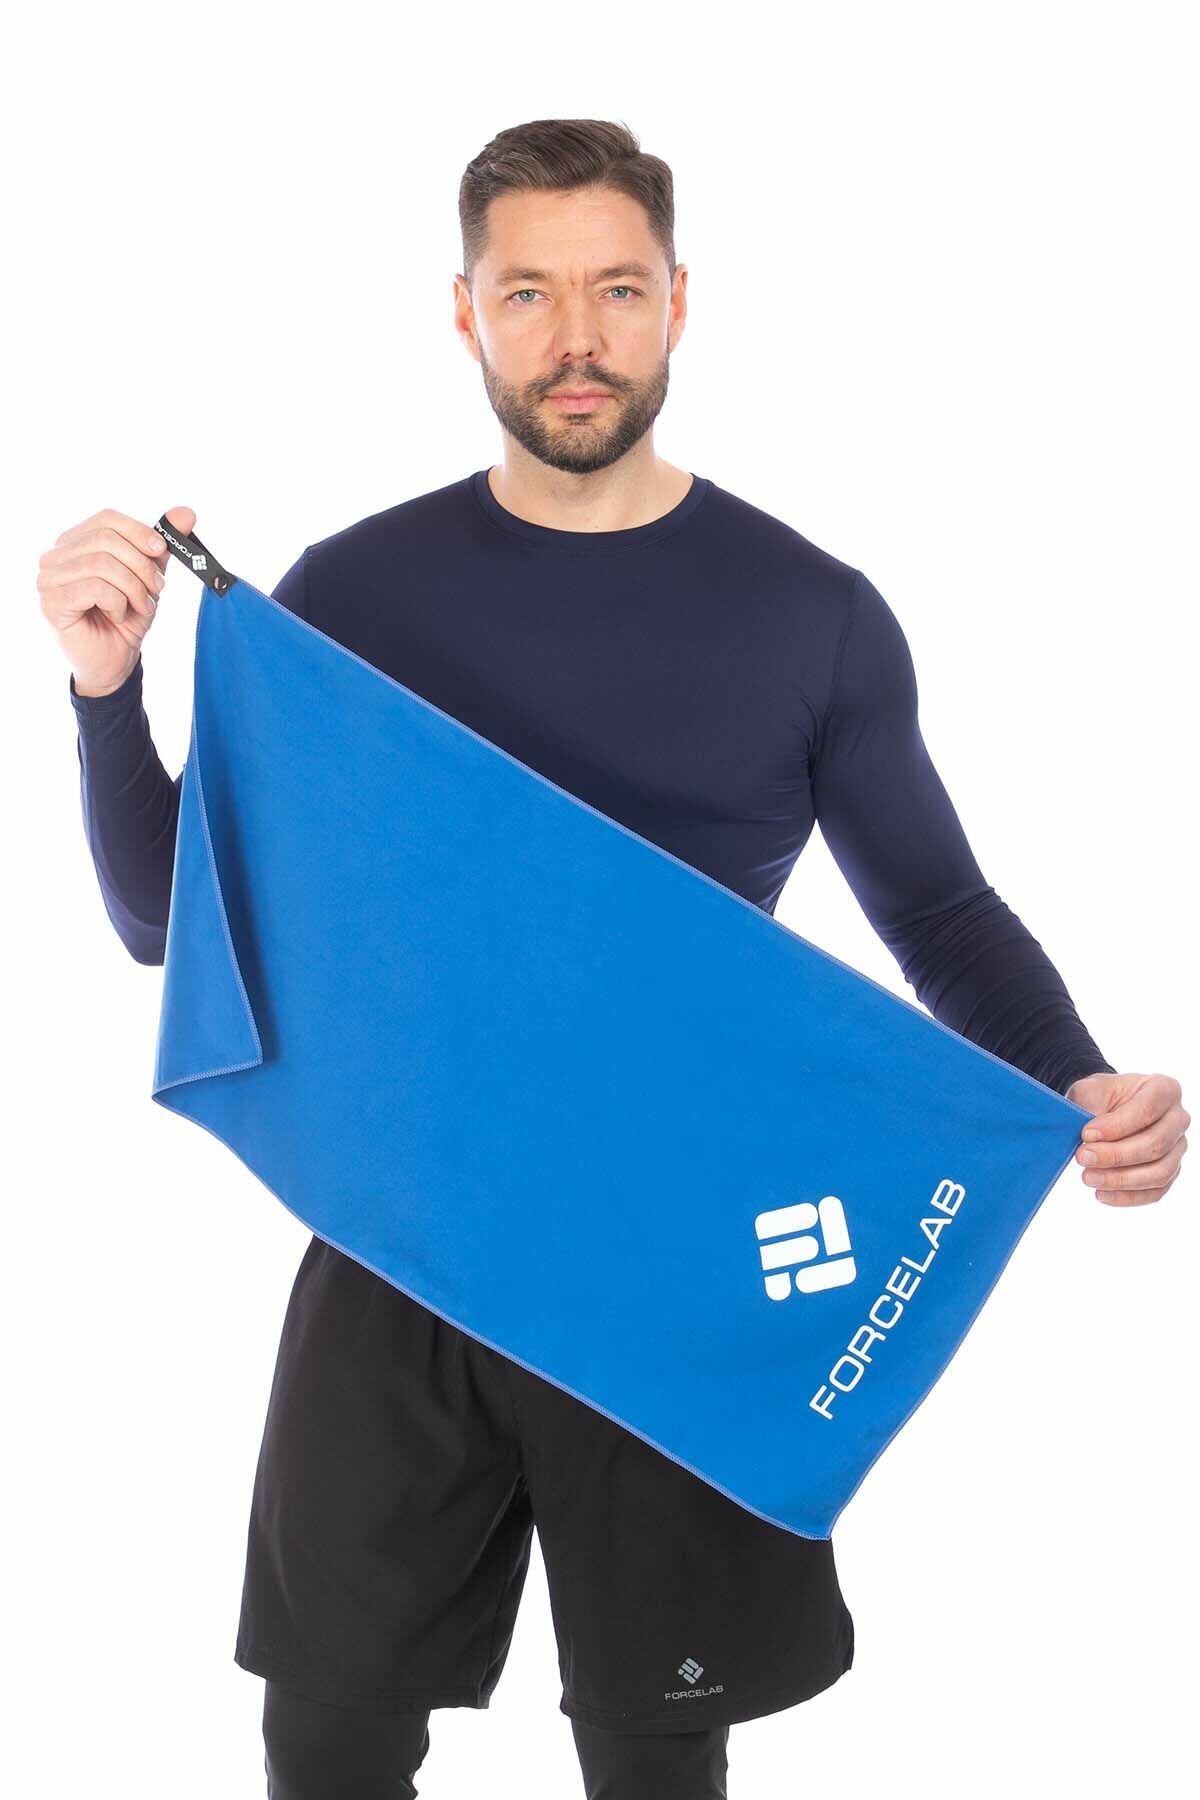 Полотенце FORCELAB маленькое спортивное быстросохнущее мягкое из микрофибры для бассейна, тренировок, фитнеса, спорта, для рук размер 40х80, синее